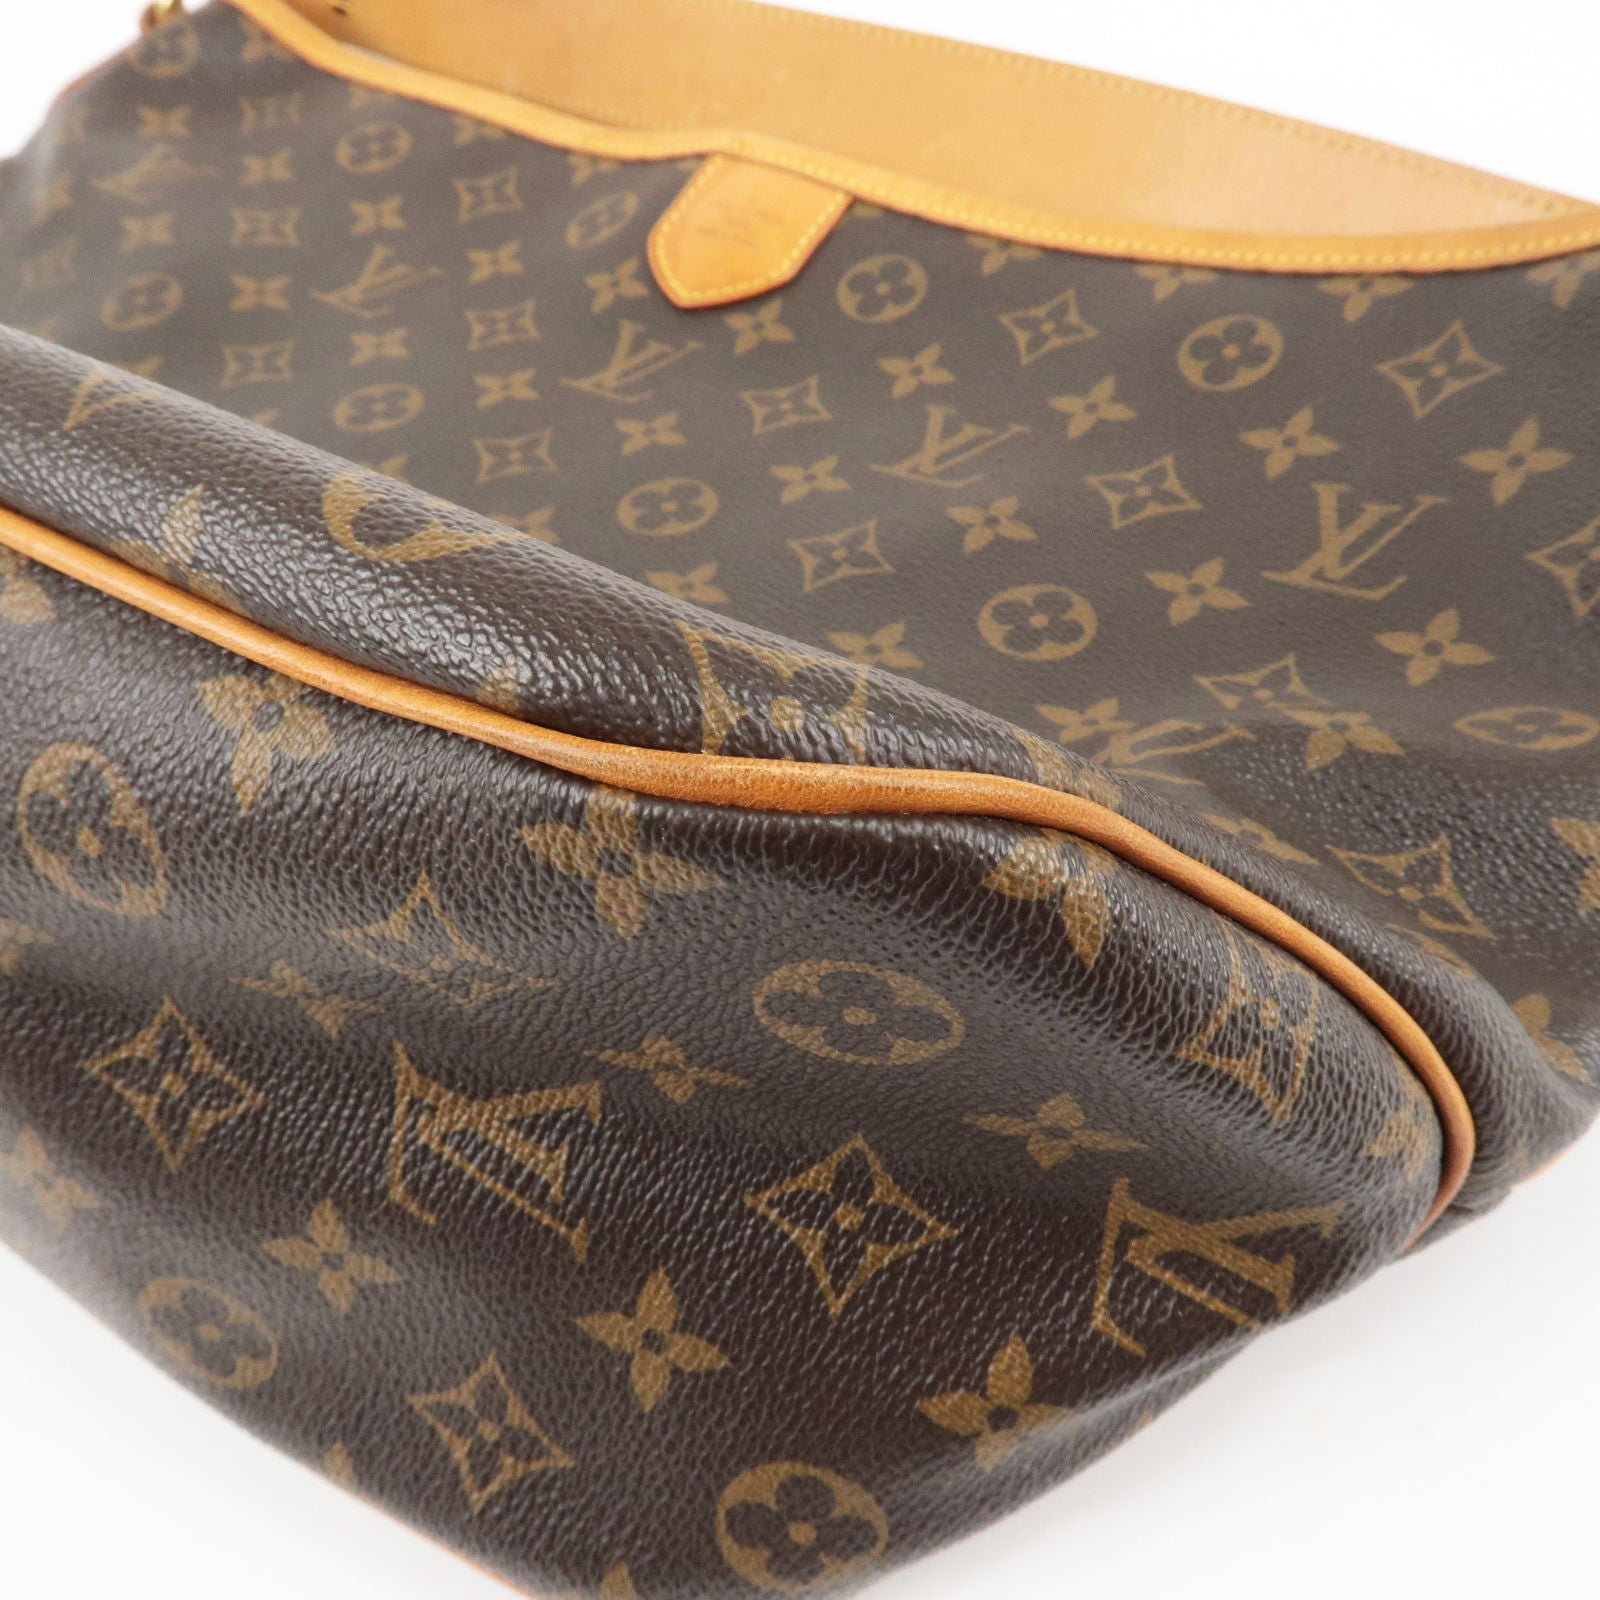 Louis-Vuitton-Monogram-Delightful-PM-Shoulder-Bag-M40352 – dct